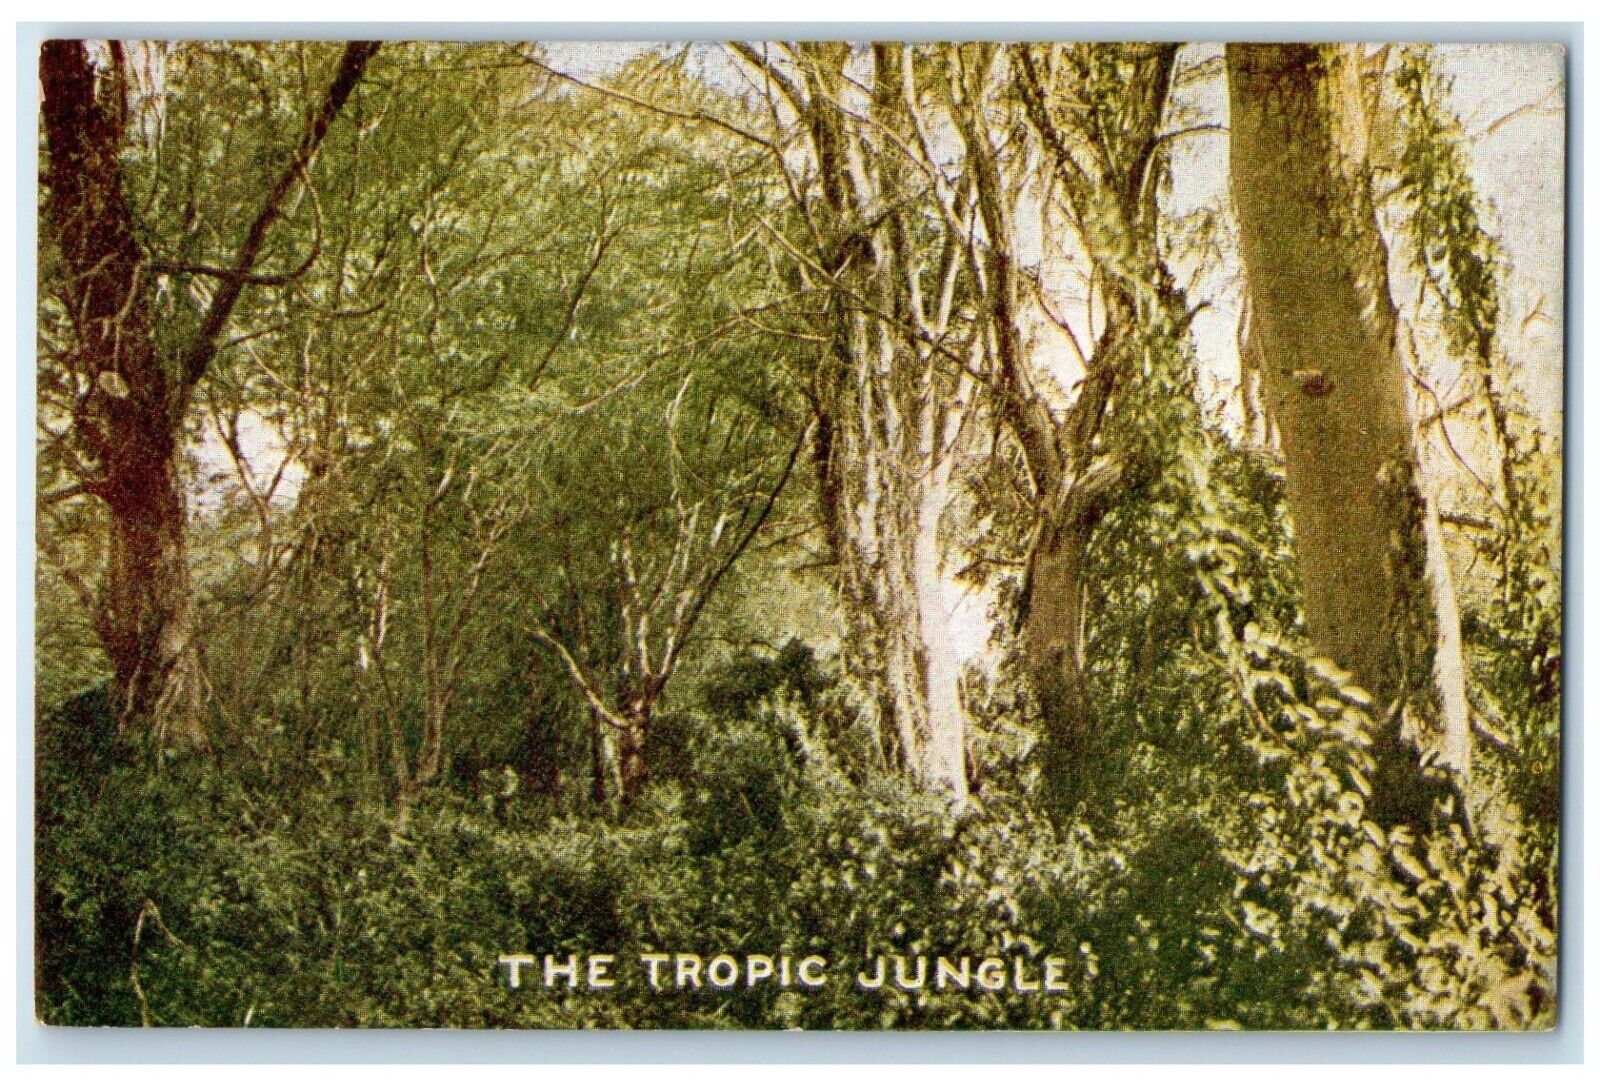 Roosevelt Tour Postcard The Tropic Jungle Topeka Kansas KS c1910's Antique